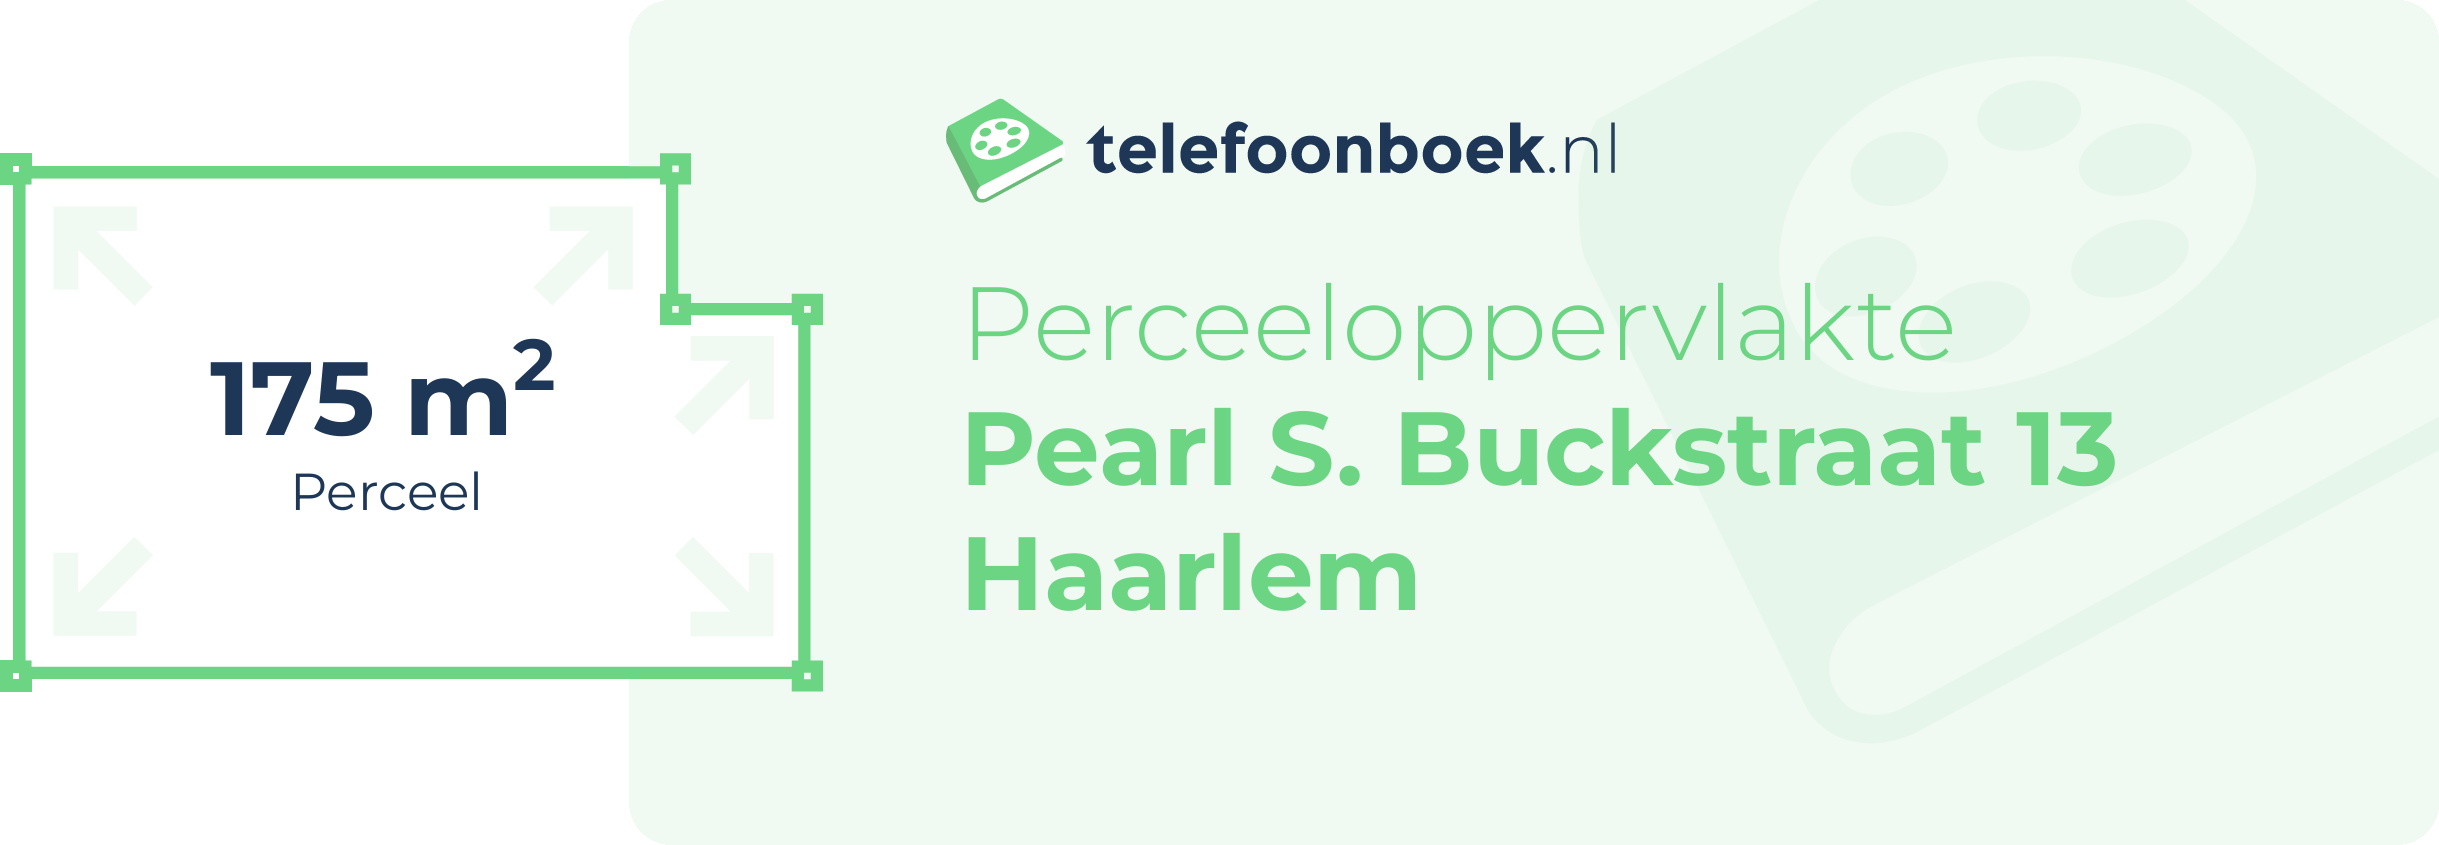 Perceeloppervlakte Pearl S. Buckstraat 13 Haarlem